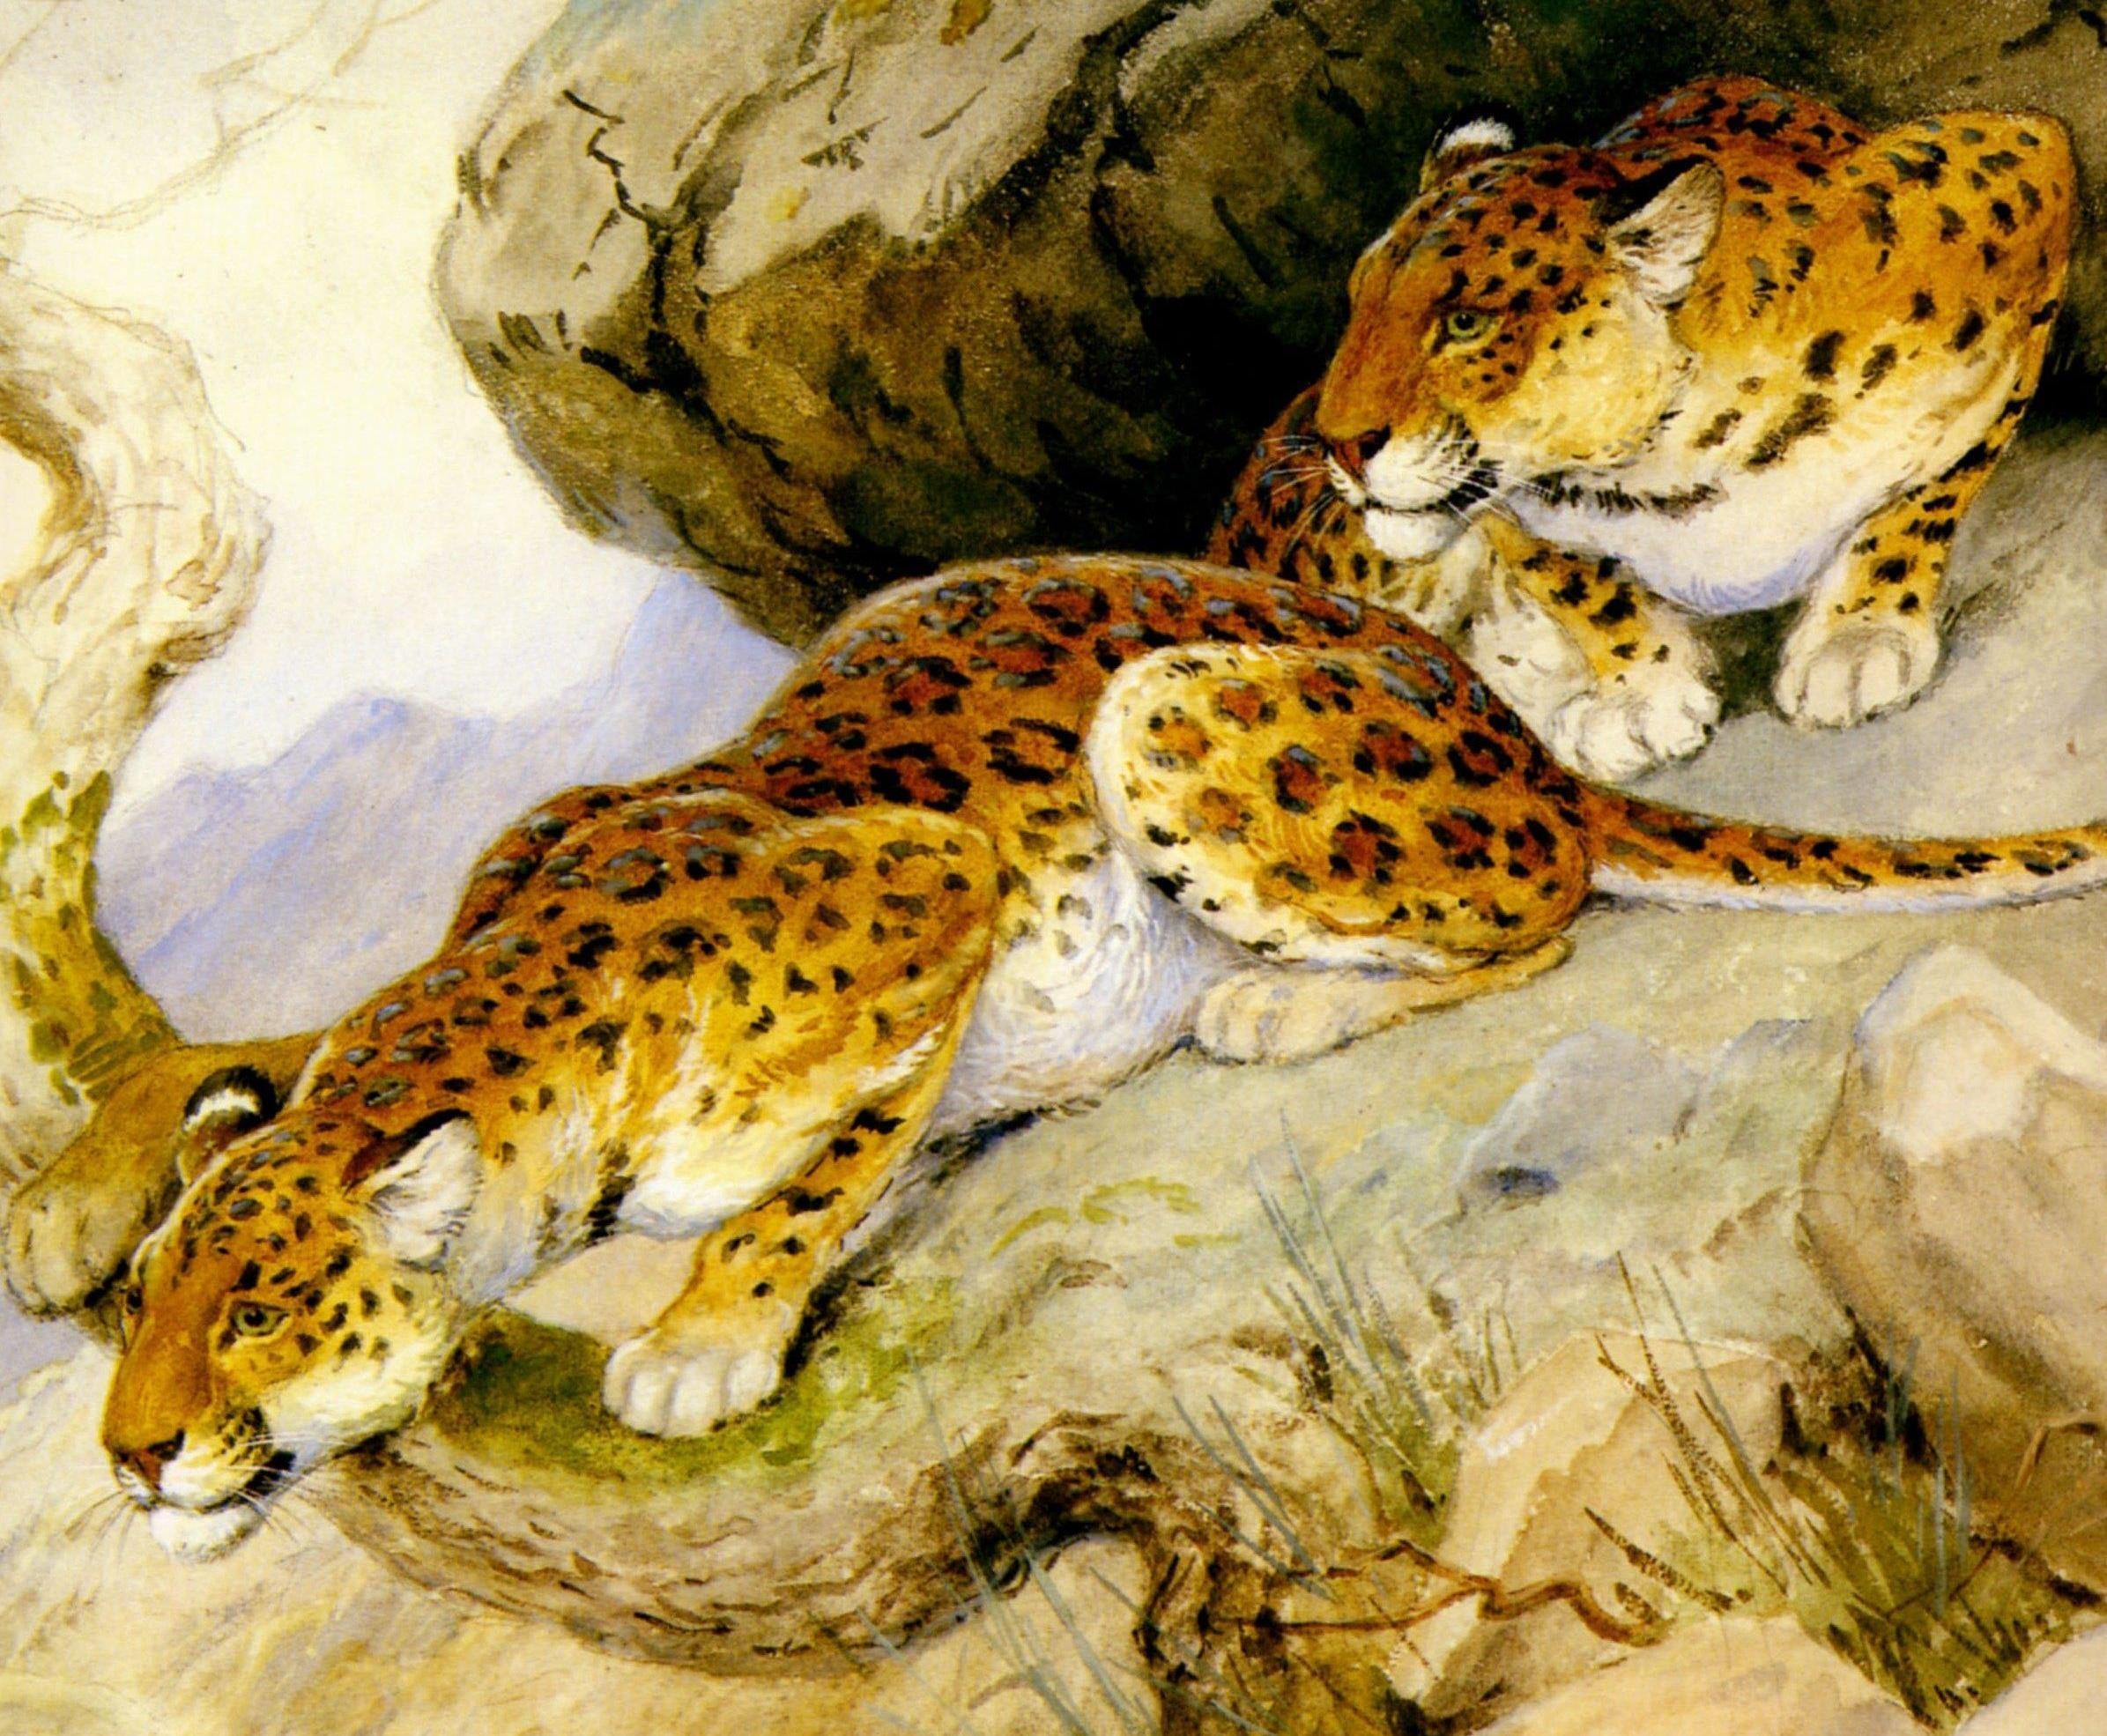 Леопард из Рудрапраяга